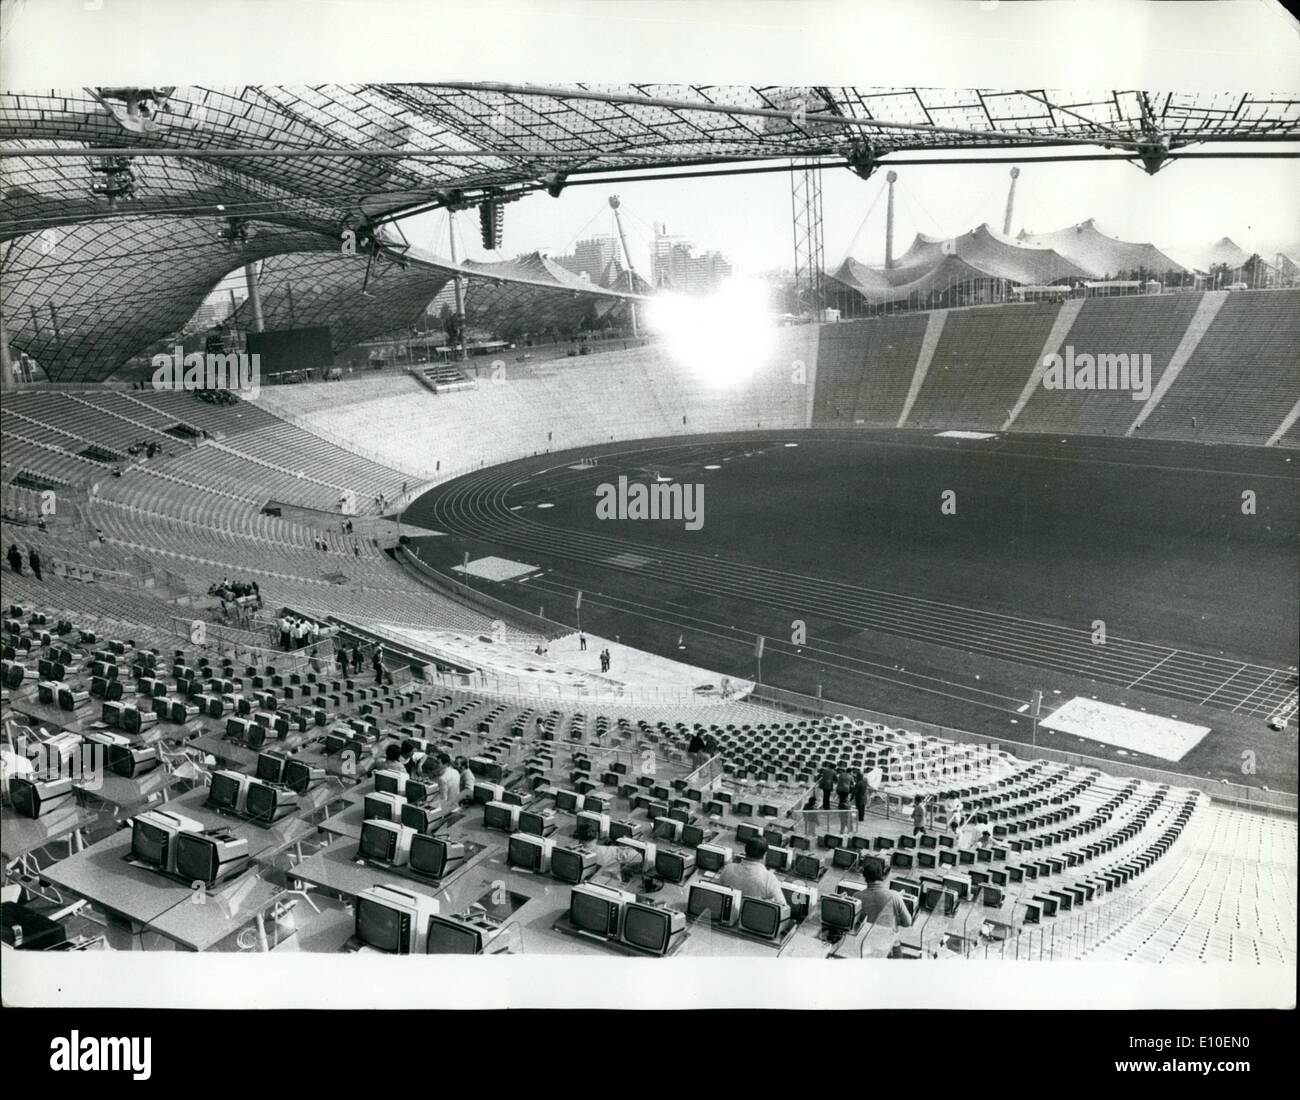 08 août 1972 - tout est prêt pour les Jeux Olympiques. La scène est maintenant fixé pour l'ouverture demain des Jeux Olympiques de Munich, et cette vue générale de l'immense Stadium montre certains des centaines de téléviseurs qui ont été installés. Banque D'Images